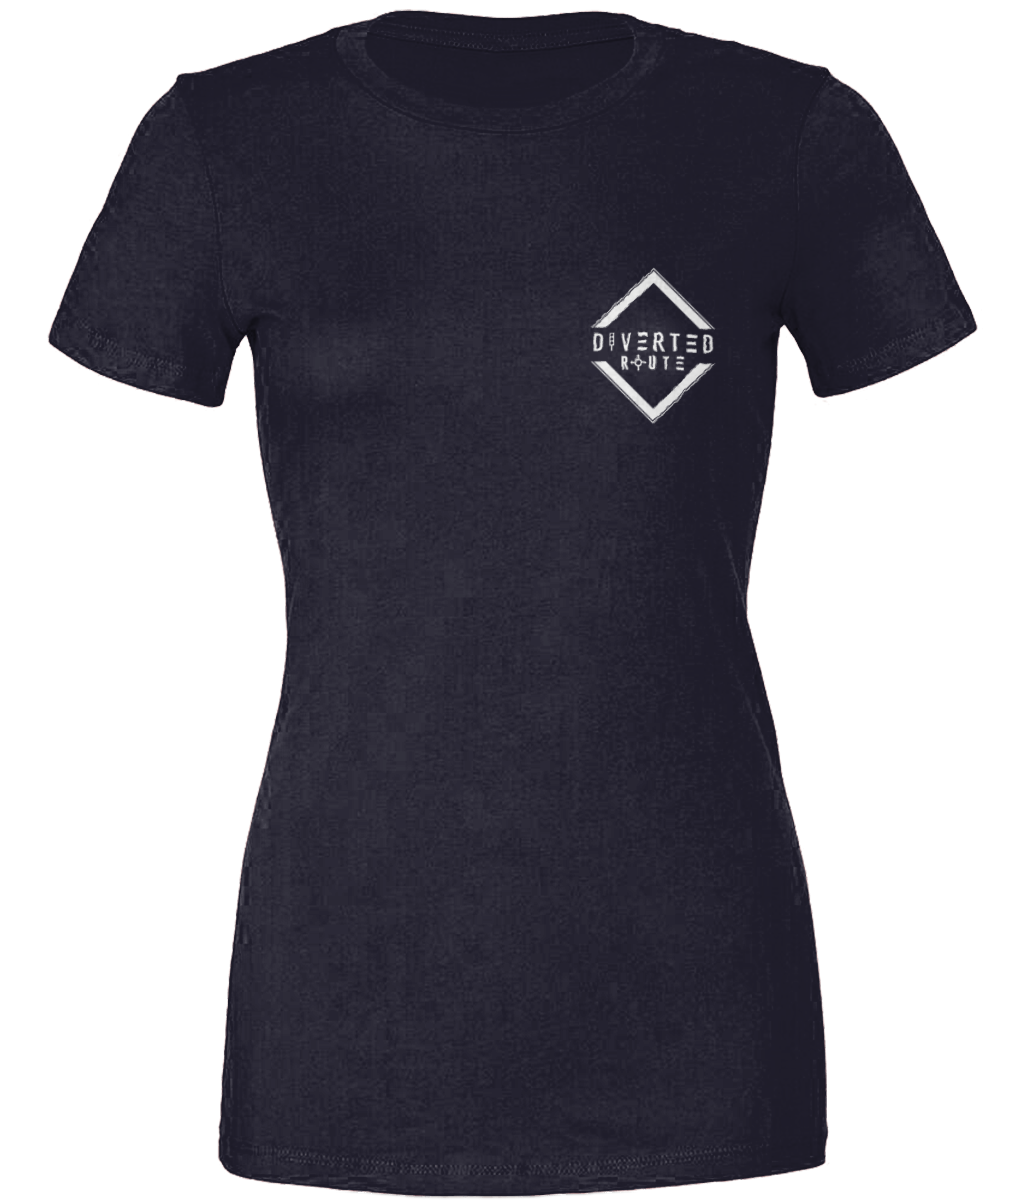 Diverted Route Ltd Womens Original T Shirt